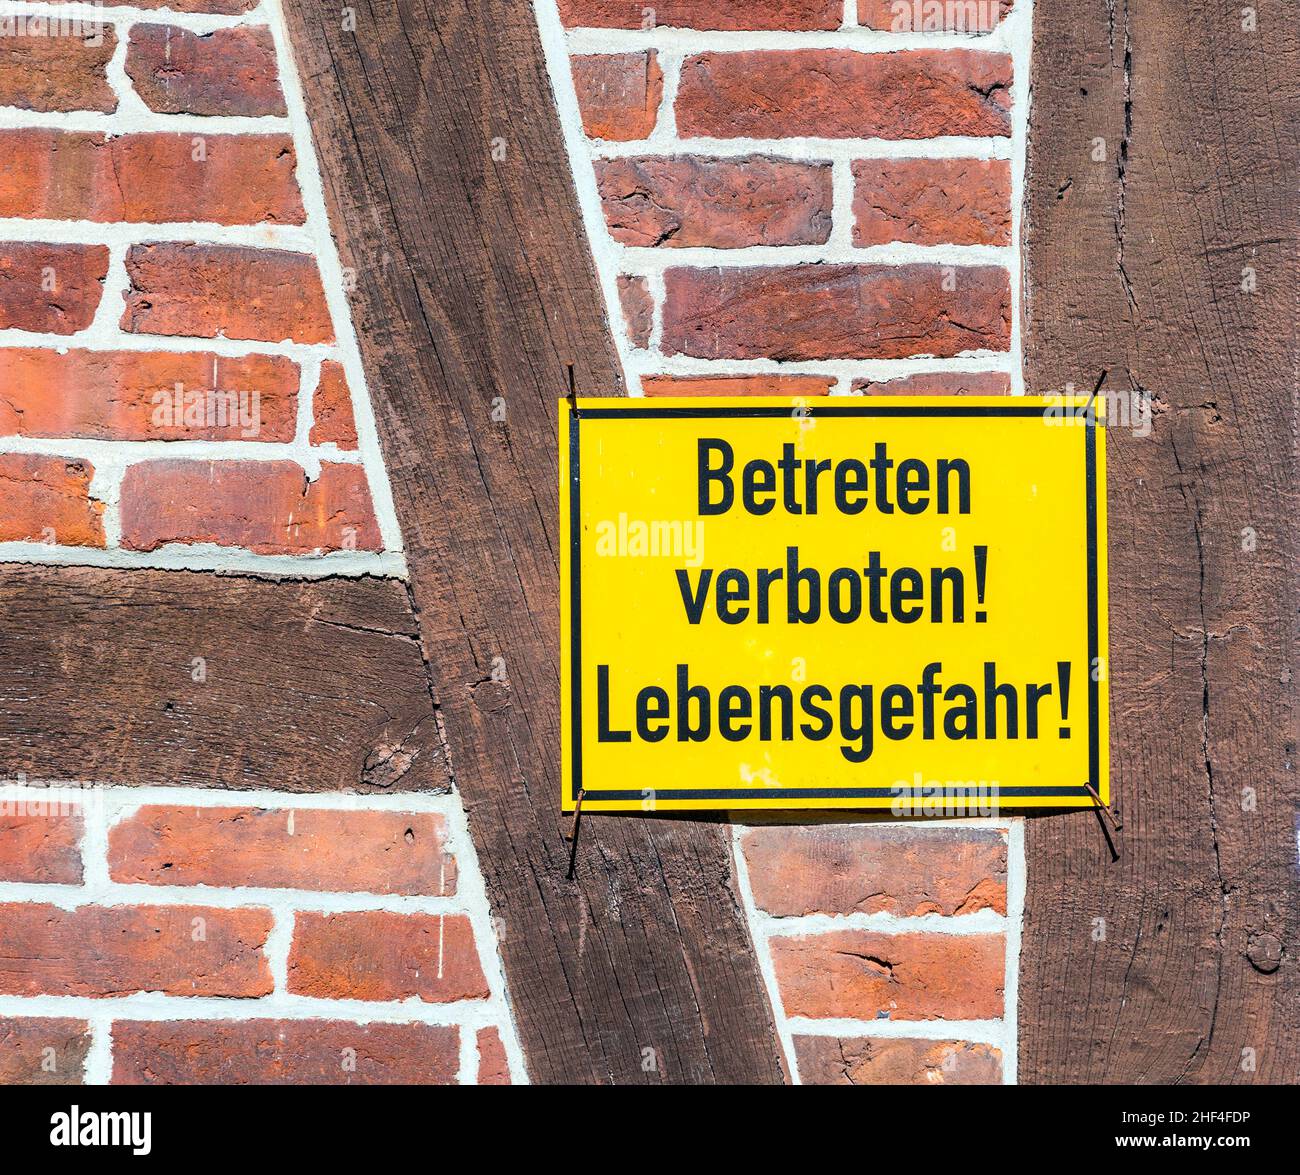 german sign betreten verboten, Lebensgefahr at a house wall Stock Photo